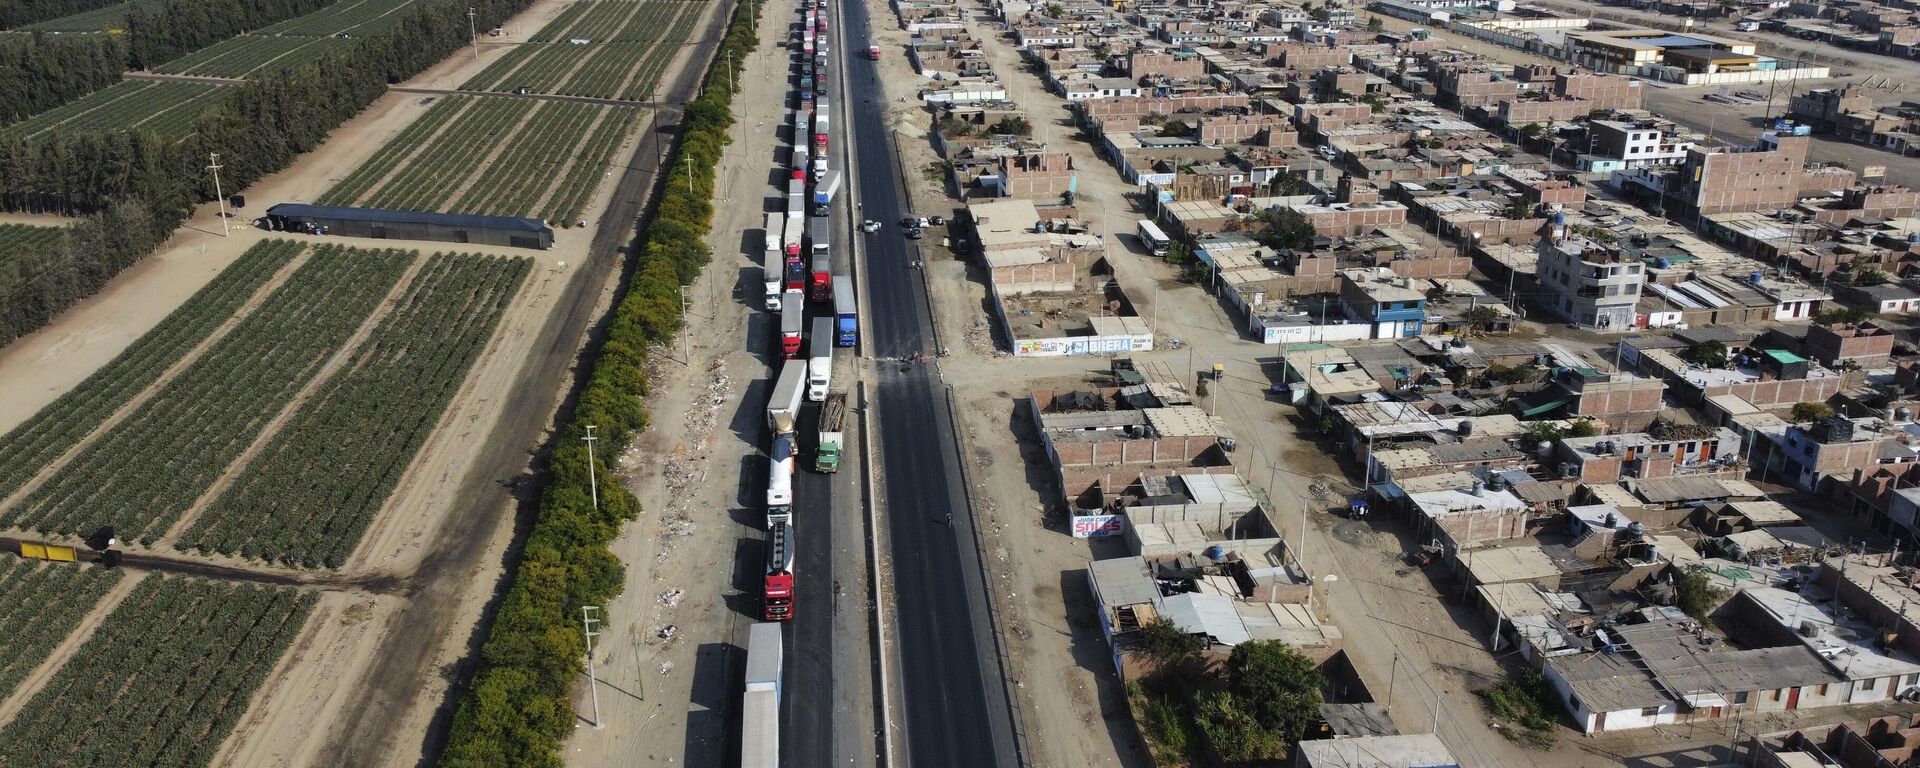 Camiones varados en la carretera por protestas en Perú  - Sputnik Mundo, 1920, 20.12.2022